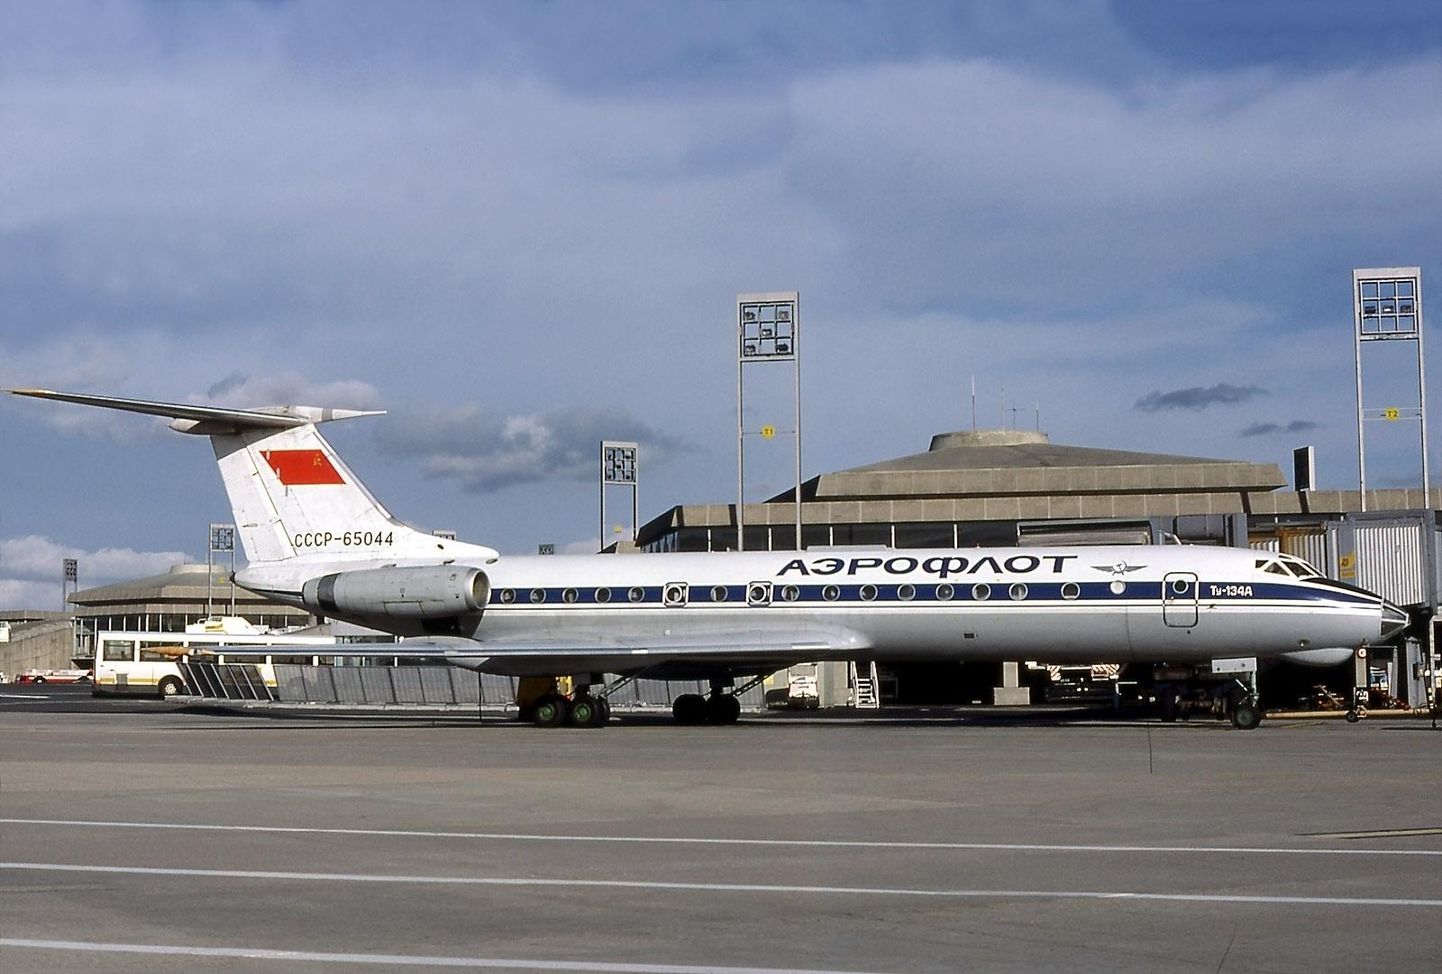 Aerofloti lennukipark koosneb tänaseks peaaegu täielikult Airbusi ja Boeingu lennukitest.